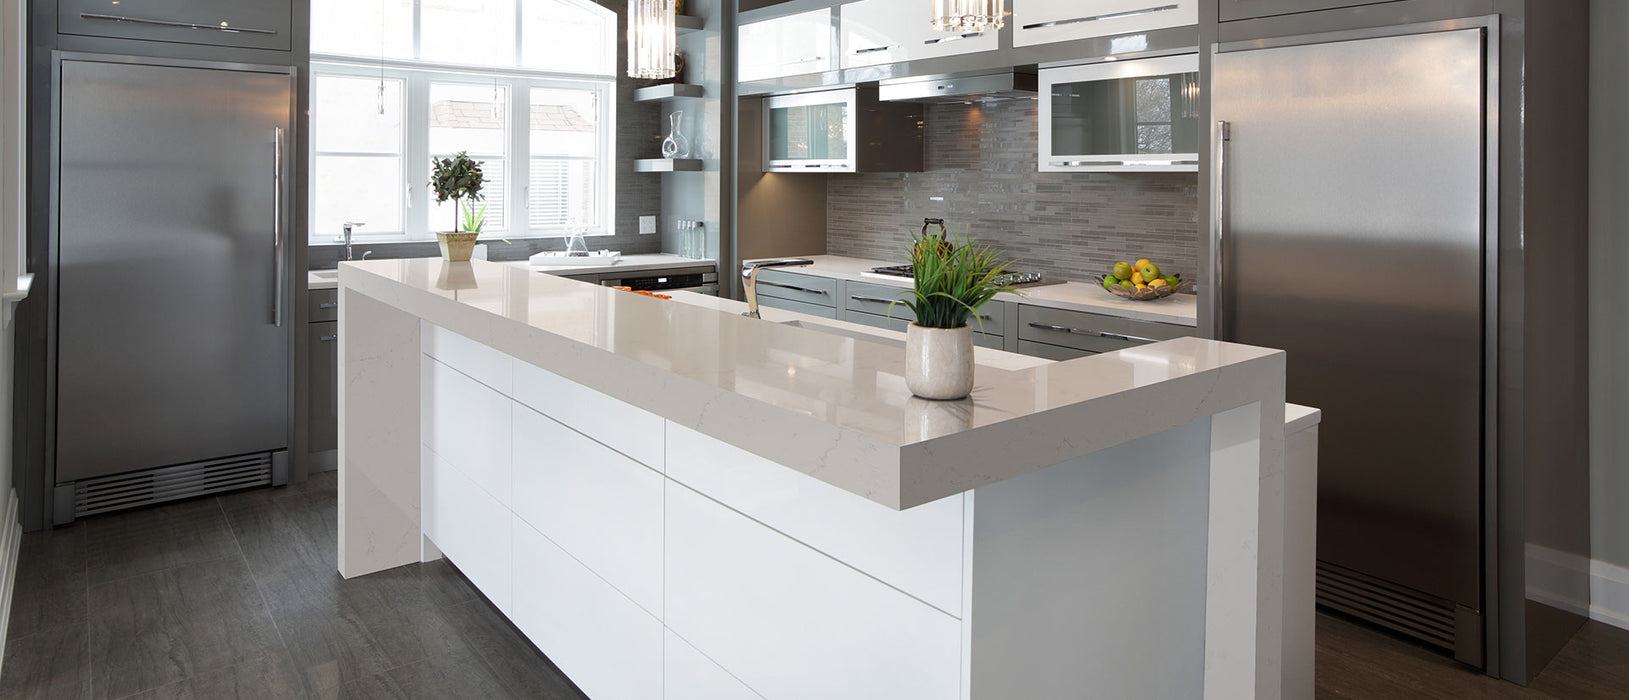 Alabaster white quartz countertop kitchen scene